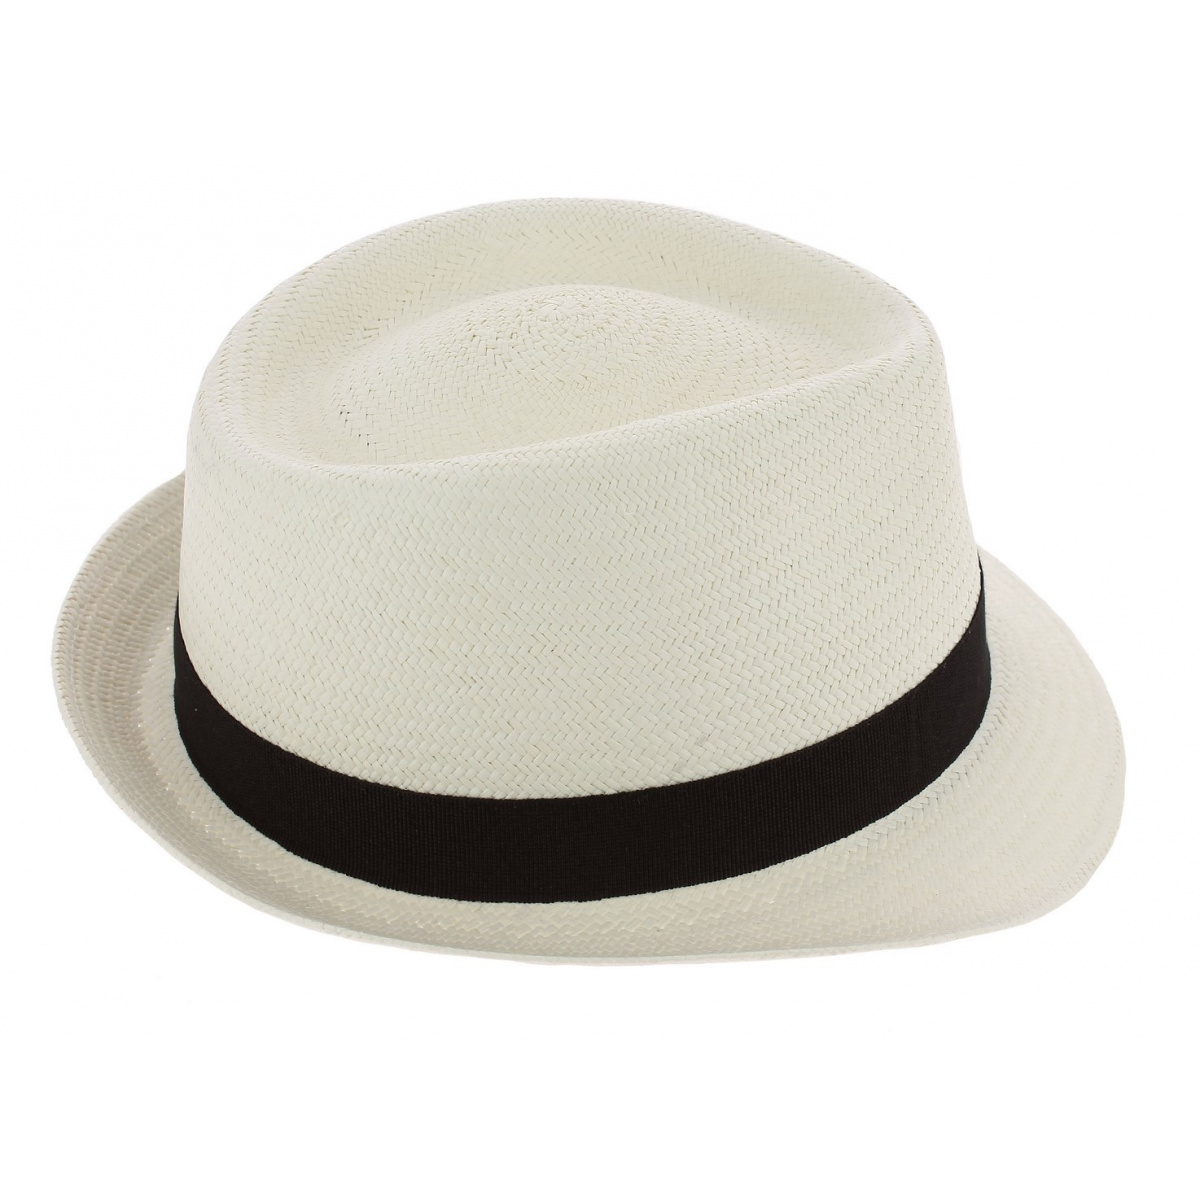 Panama Hat Trilby Royal Panama Hat - Flechette Reference : 8034 ...